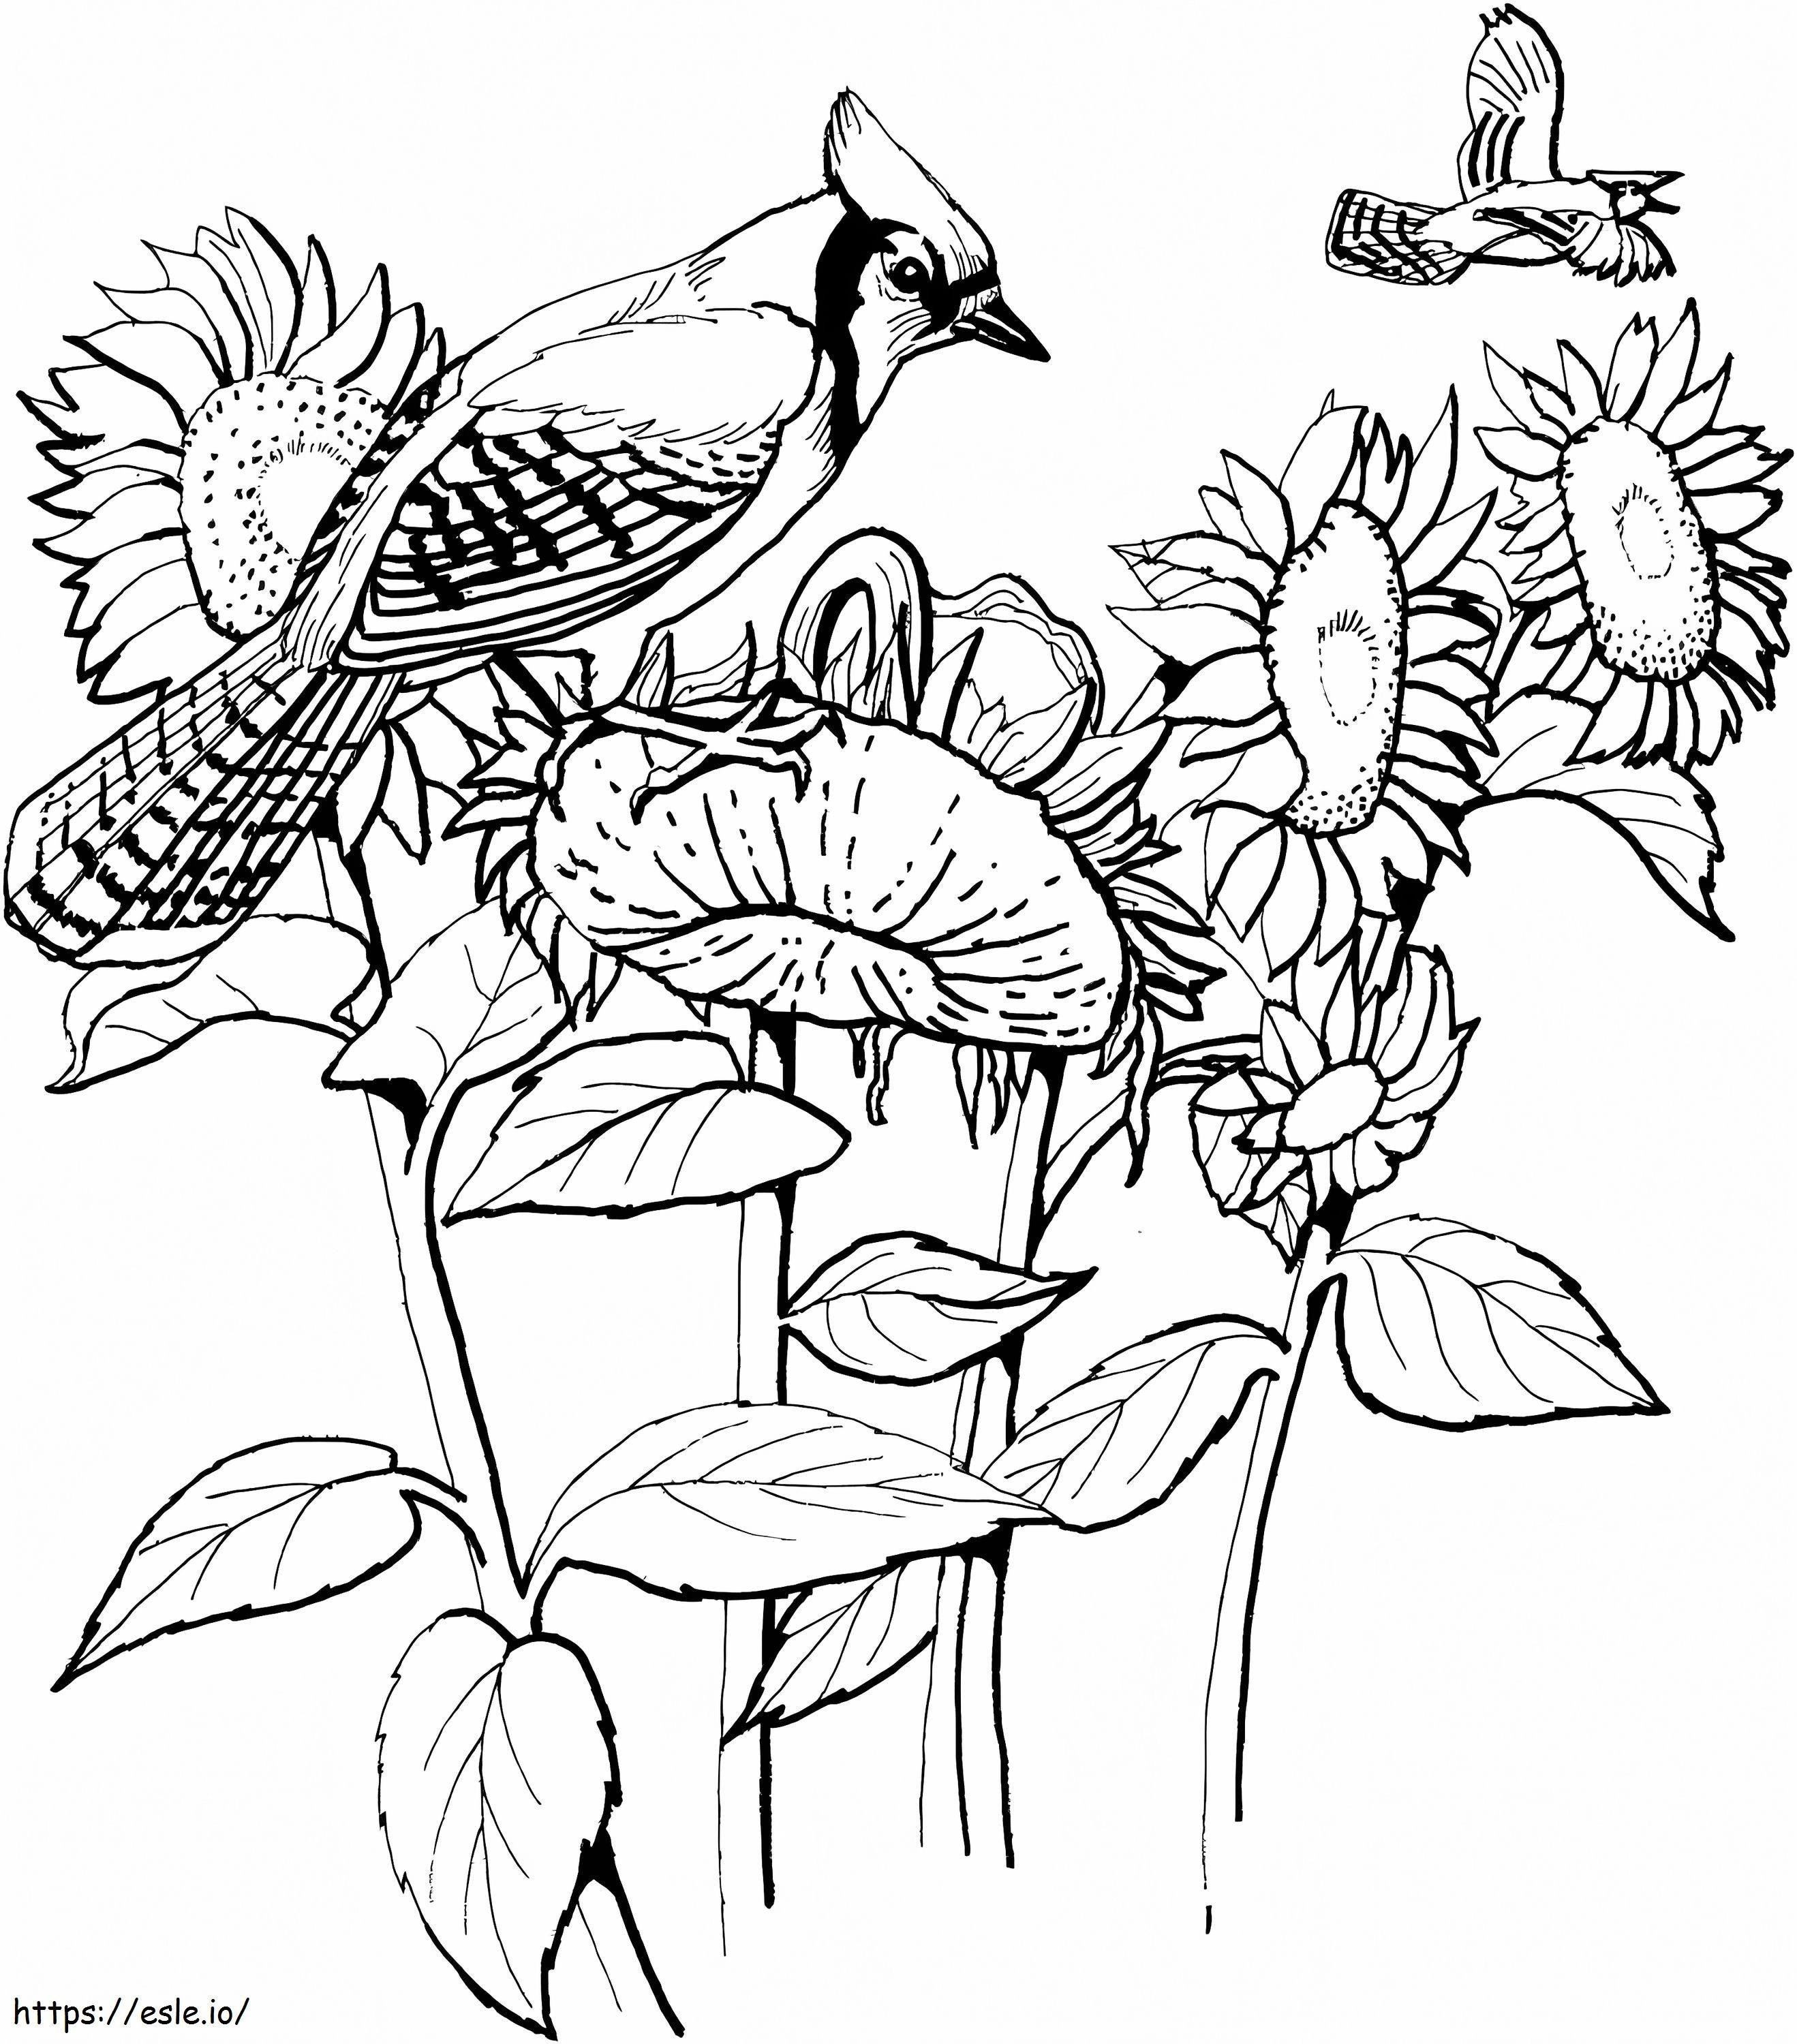 Blue Jay und Sonnenblumen ausmalbilder